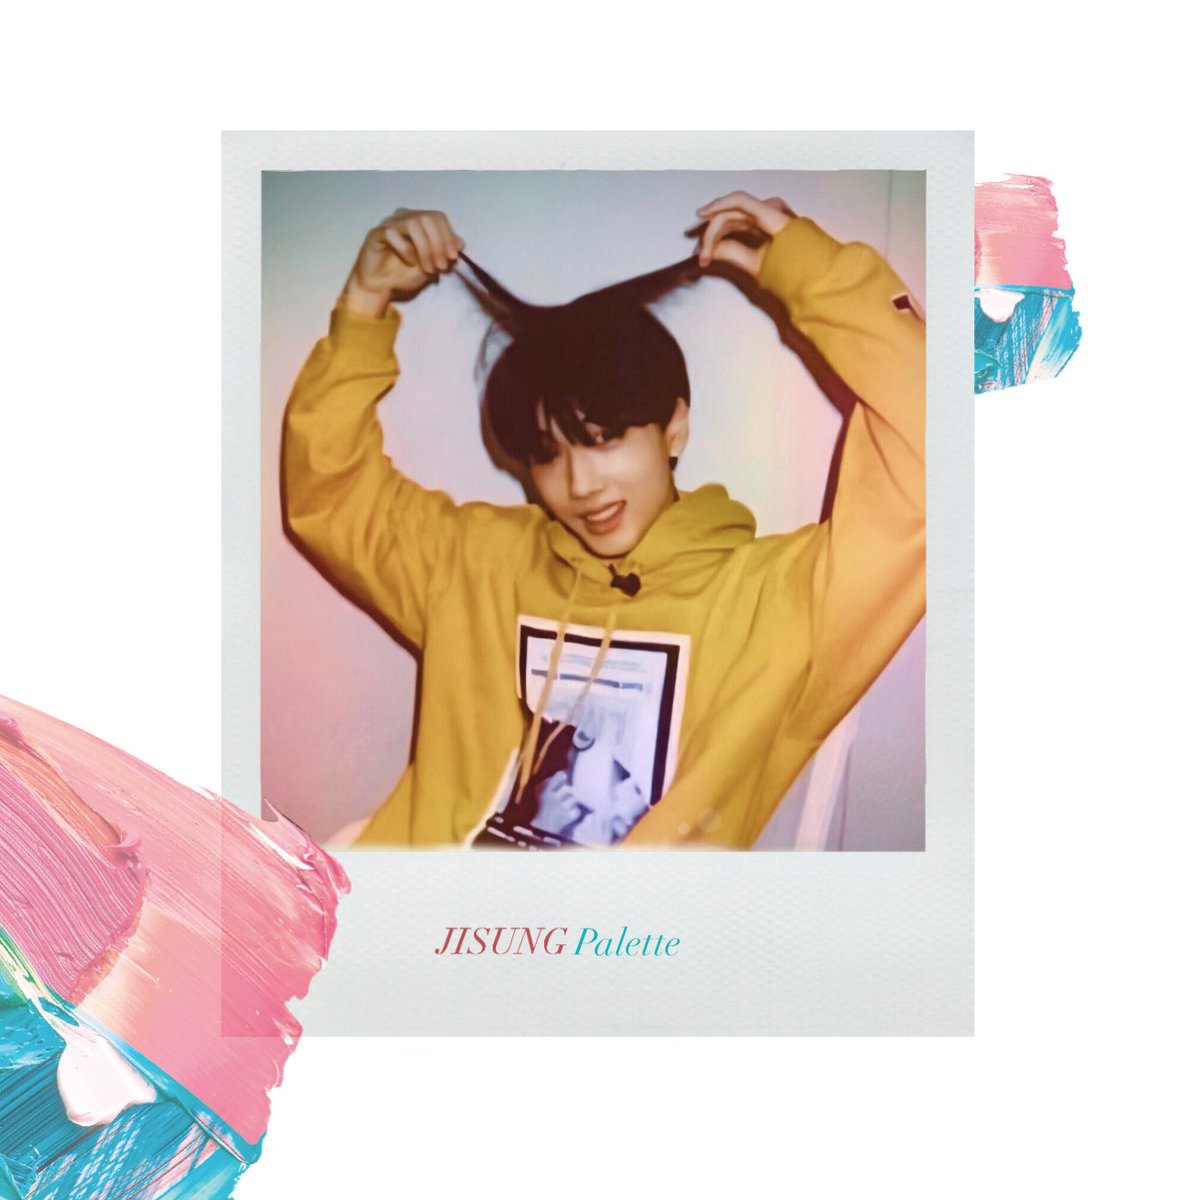 jisung as kpop solo albums - a short edit thread palette - iu